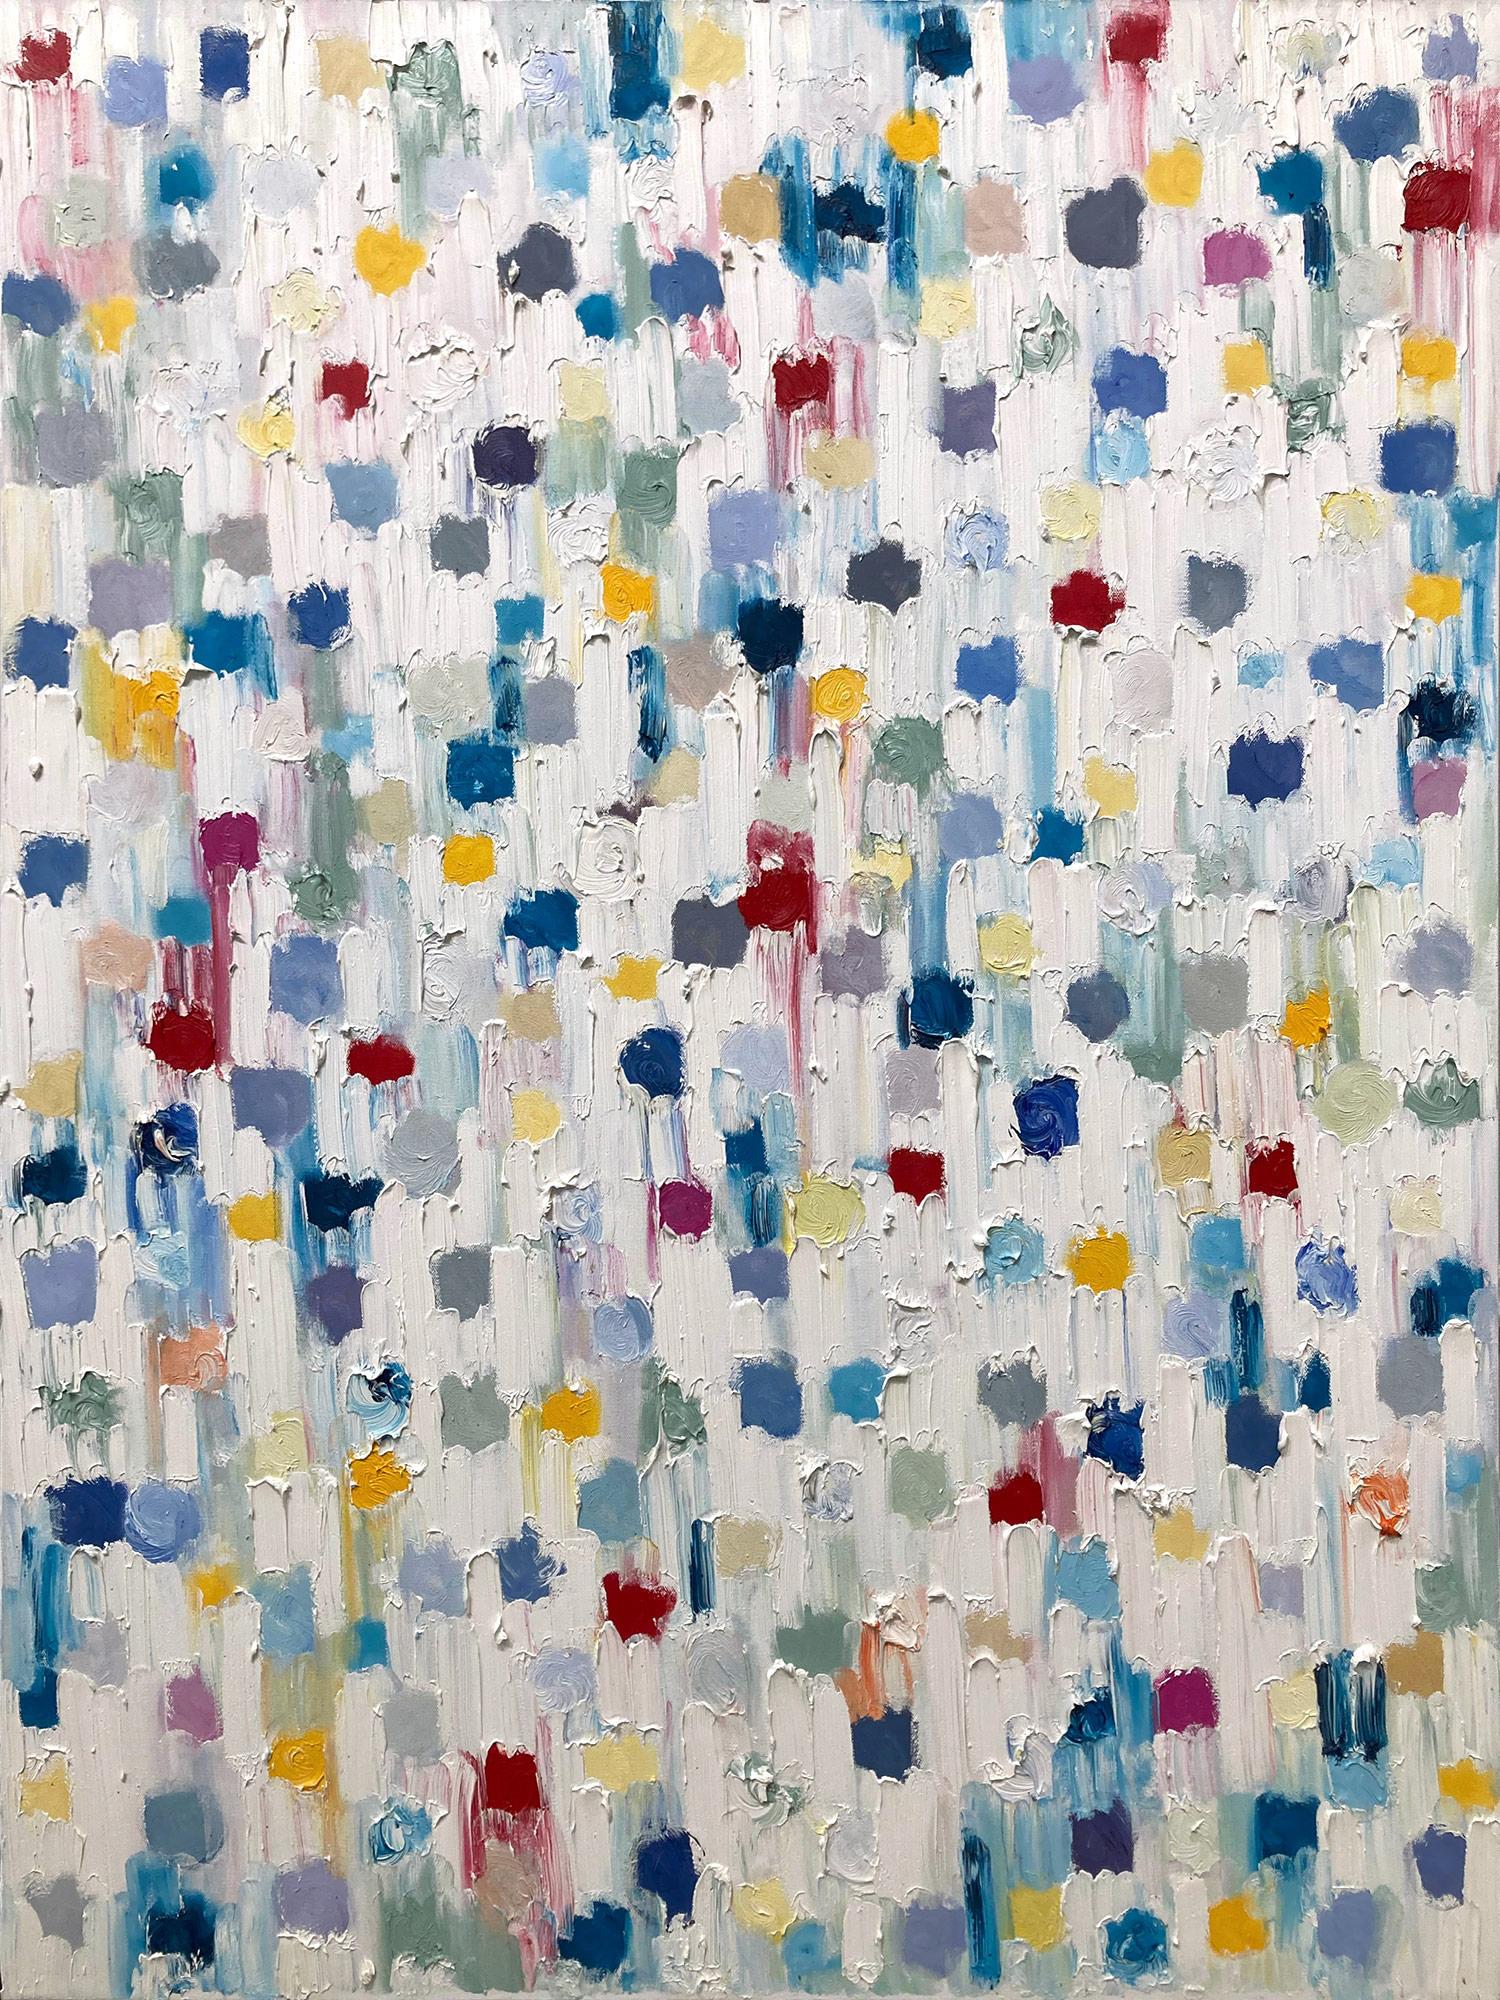 Abstract Painting Cindy Shaoul - "Dripping Dots - Capri" Peinture à l'huile abstraite contemporaine colorée sur toile